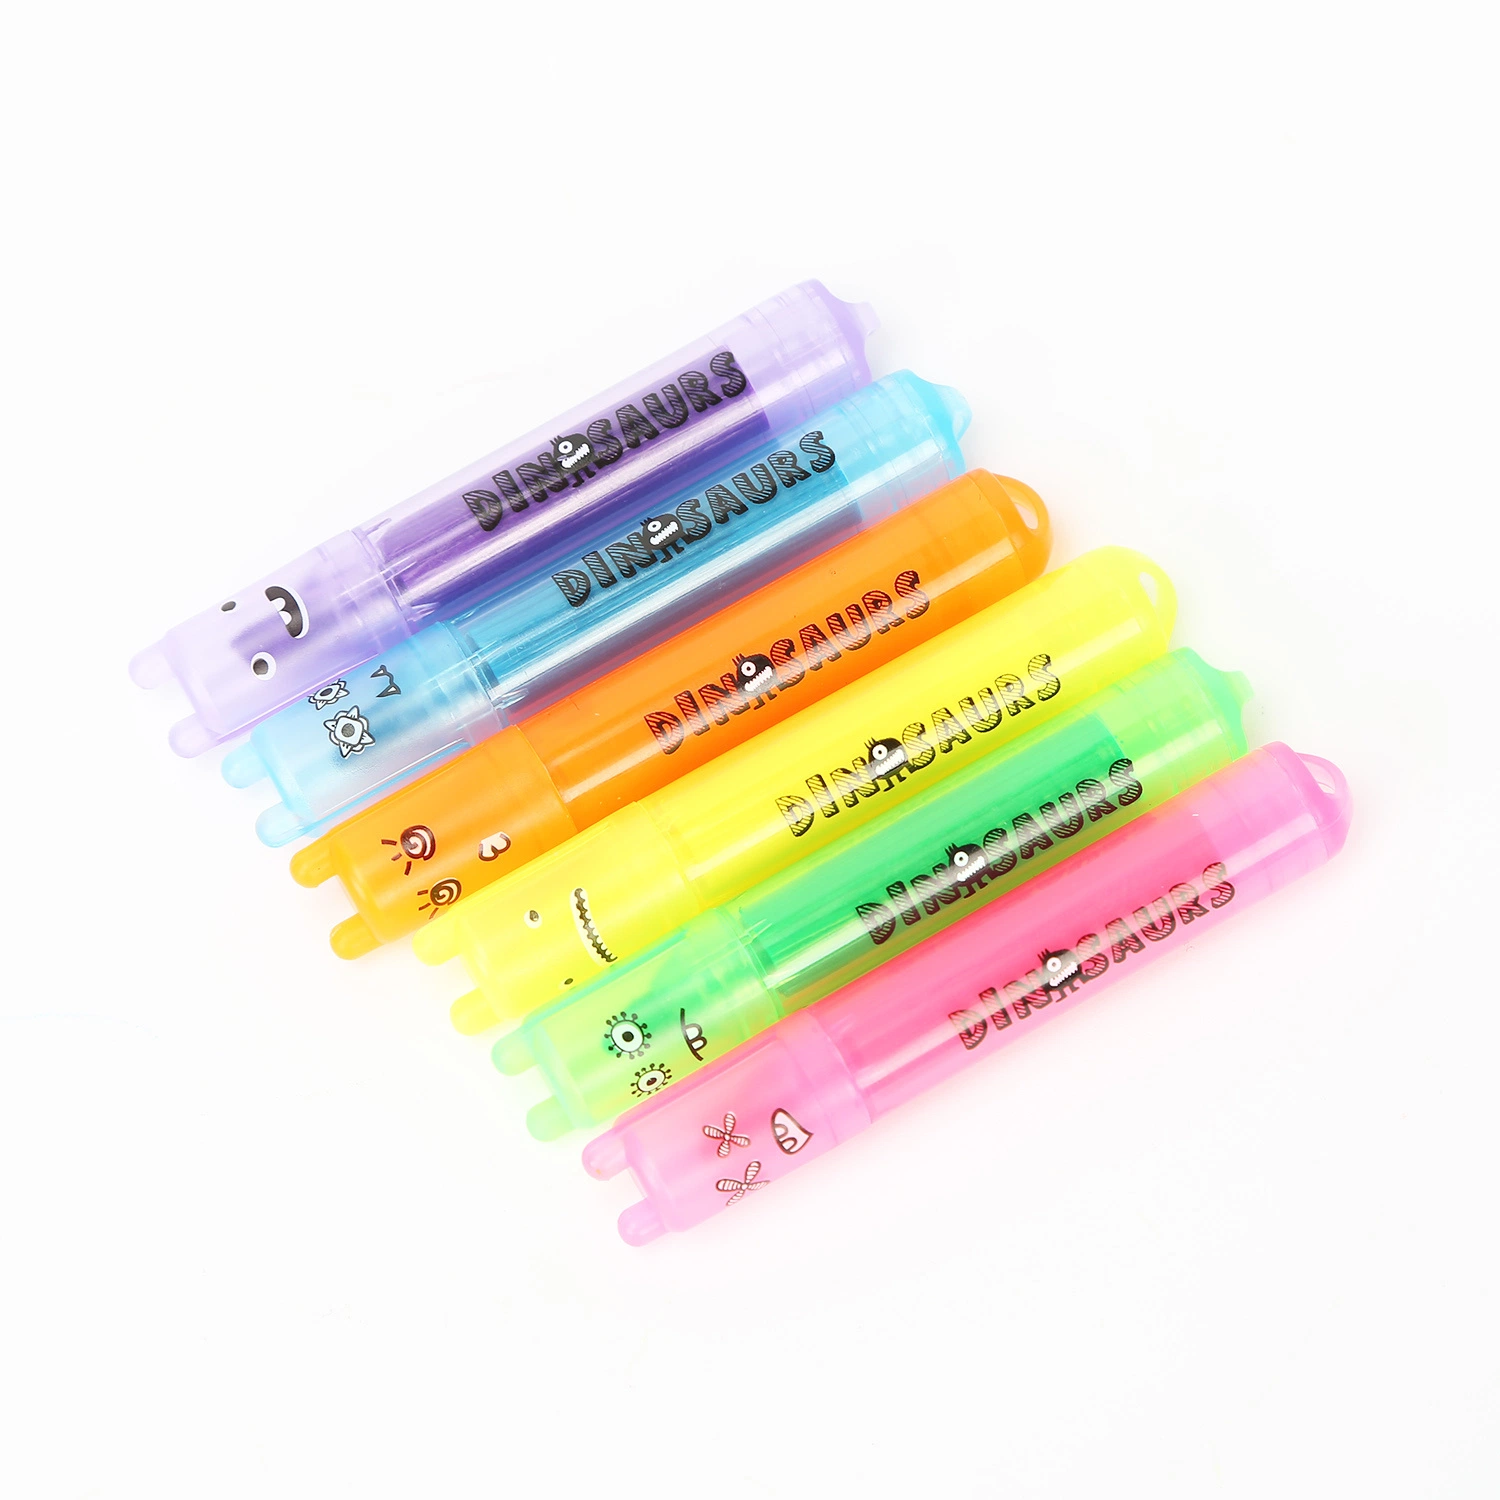 Управление школьных принадлежностей продукты флуоресцентный красочные маркером набор маркера